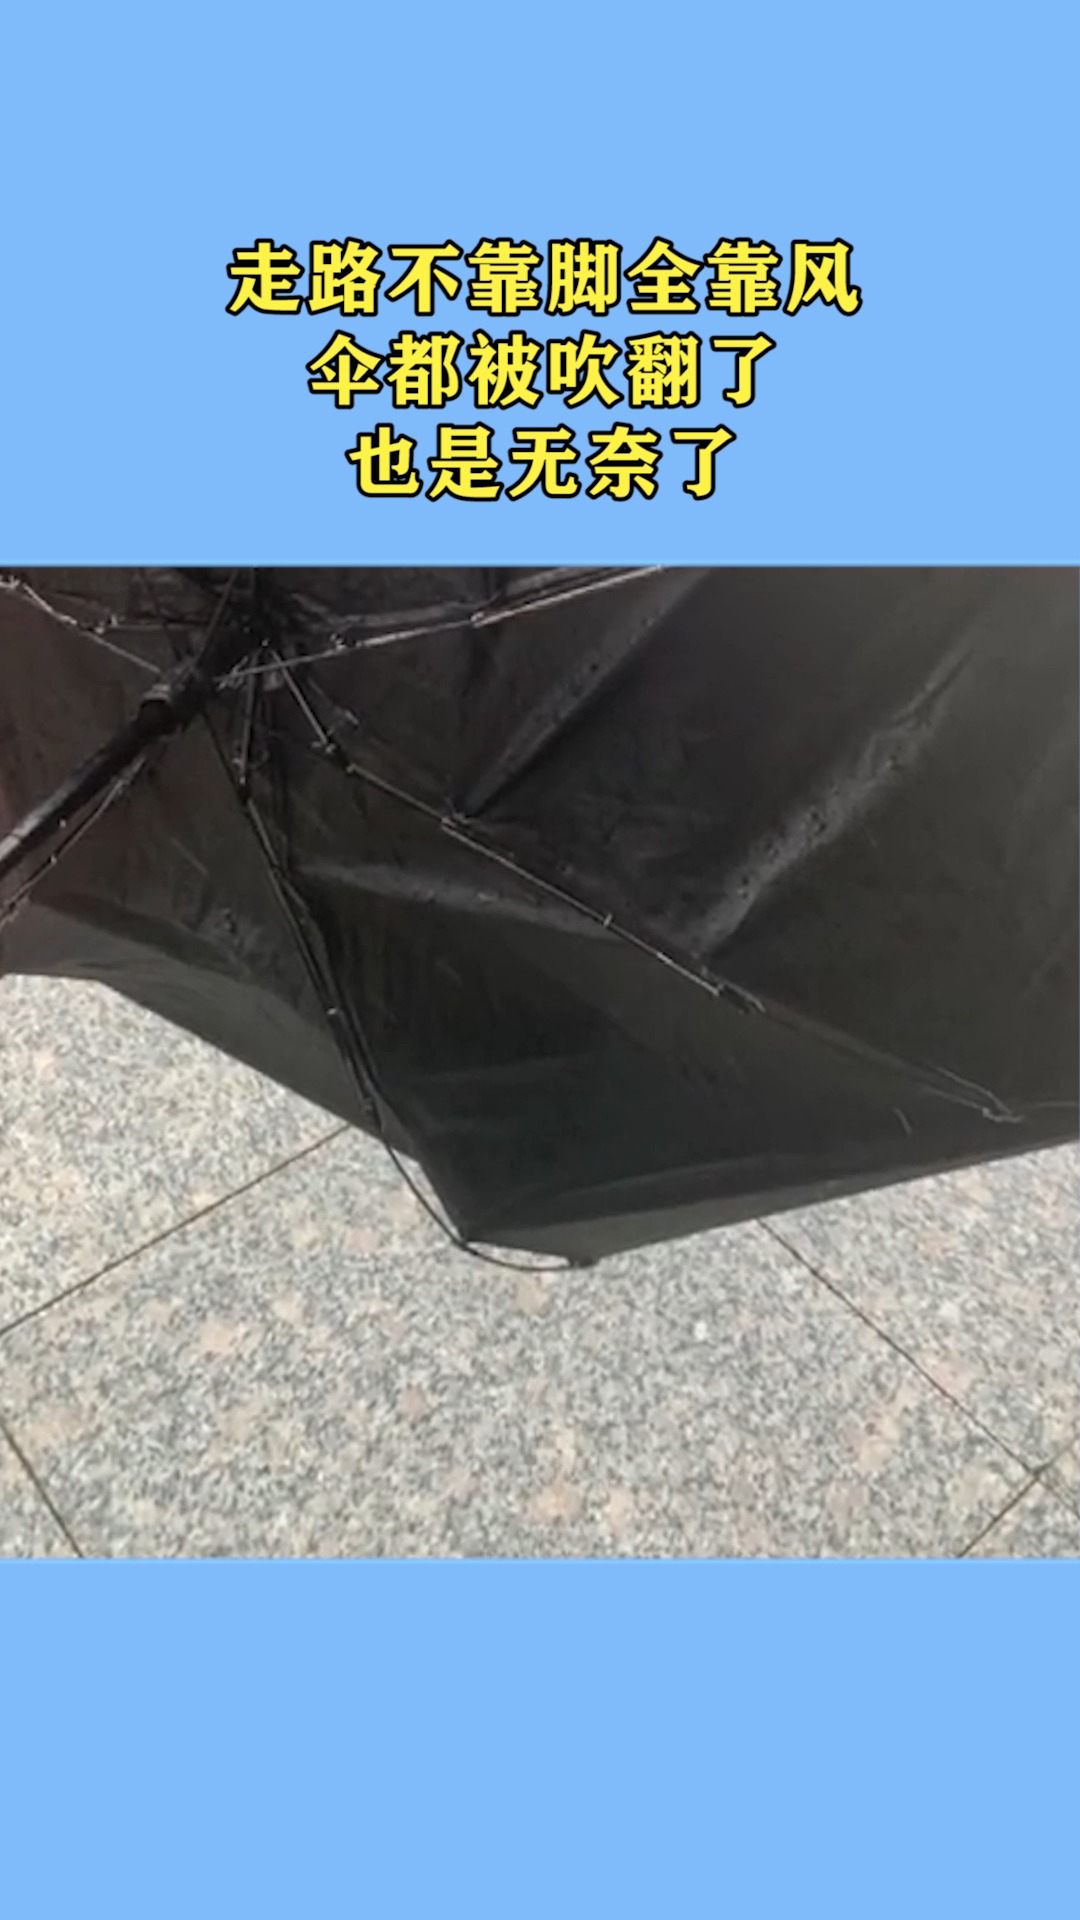 伞被风吹翻图片图片